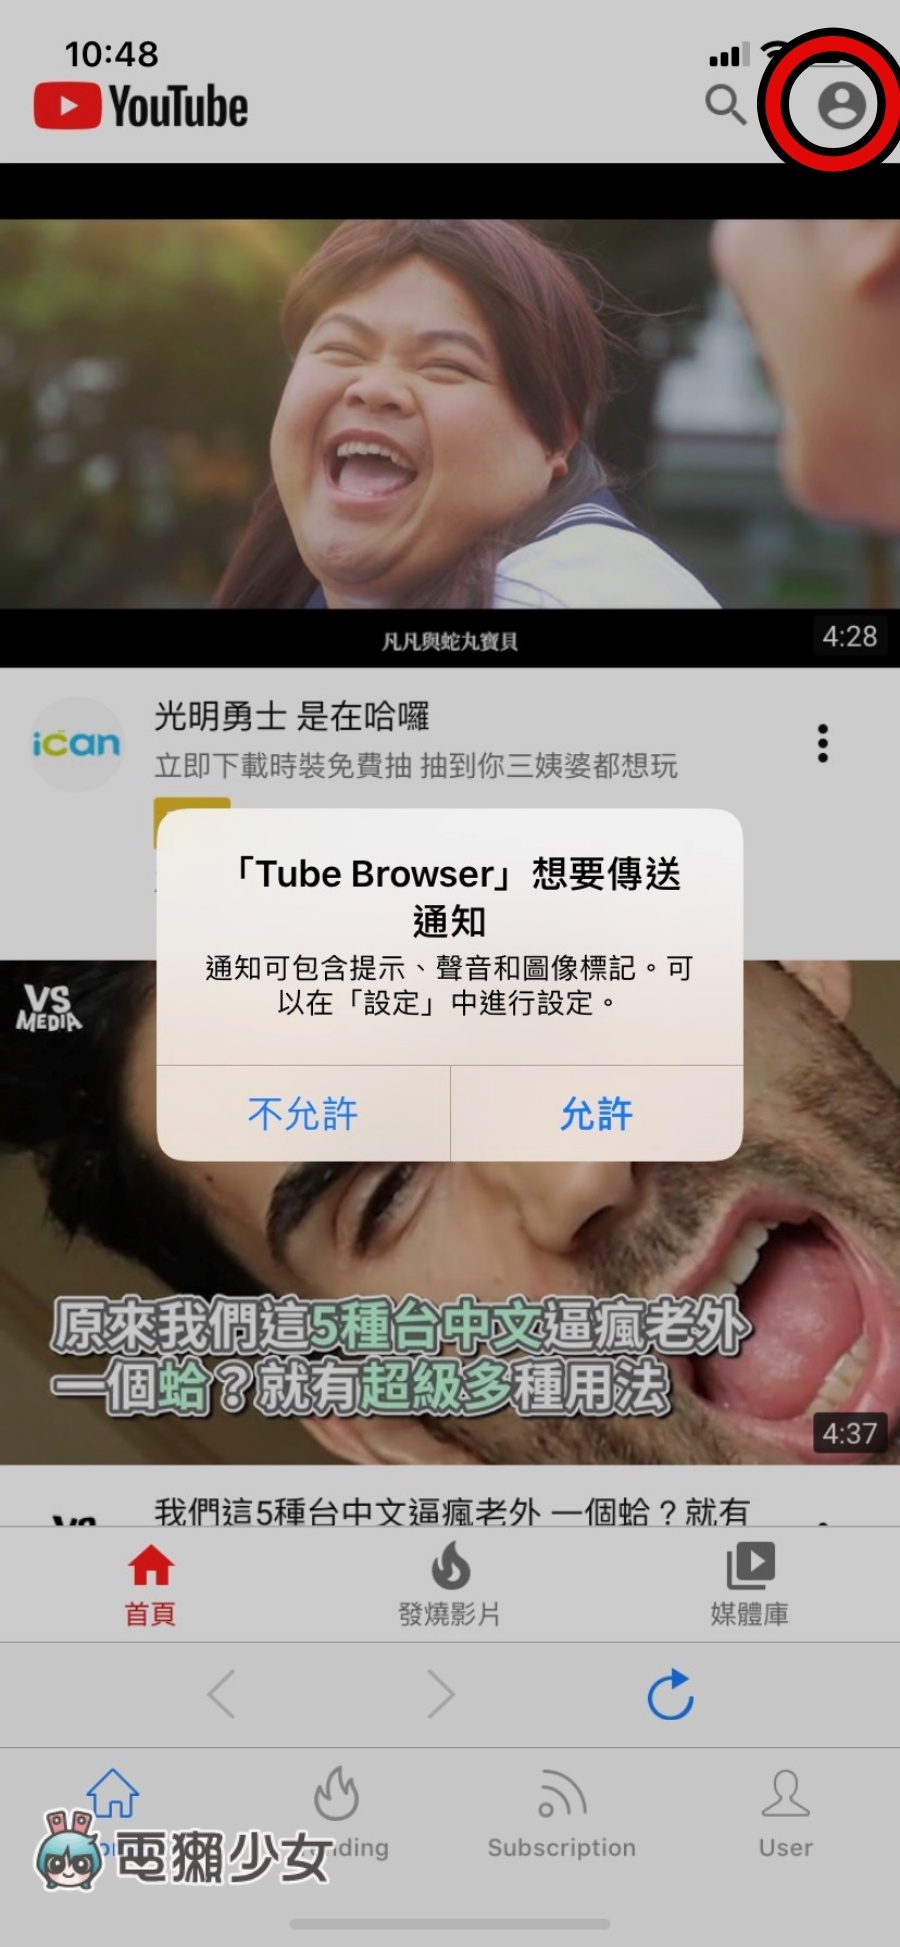 廣告再見！最長壽的鎖螢幕聽音樂 App『 Tube Browser 』還能阻擋煩人廣告 限時免費中！